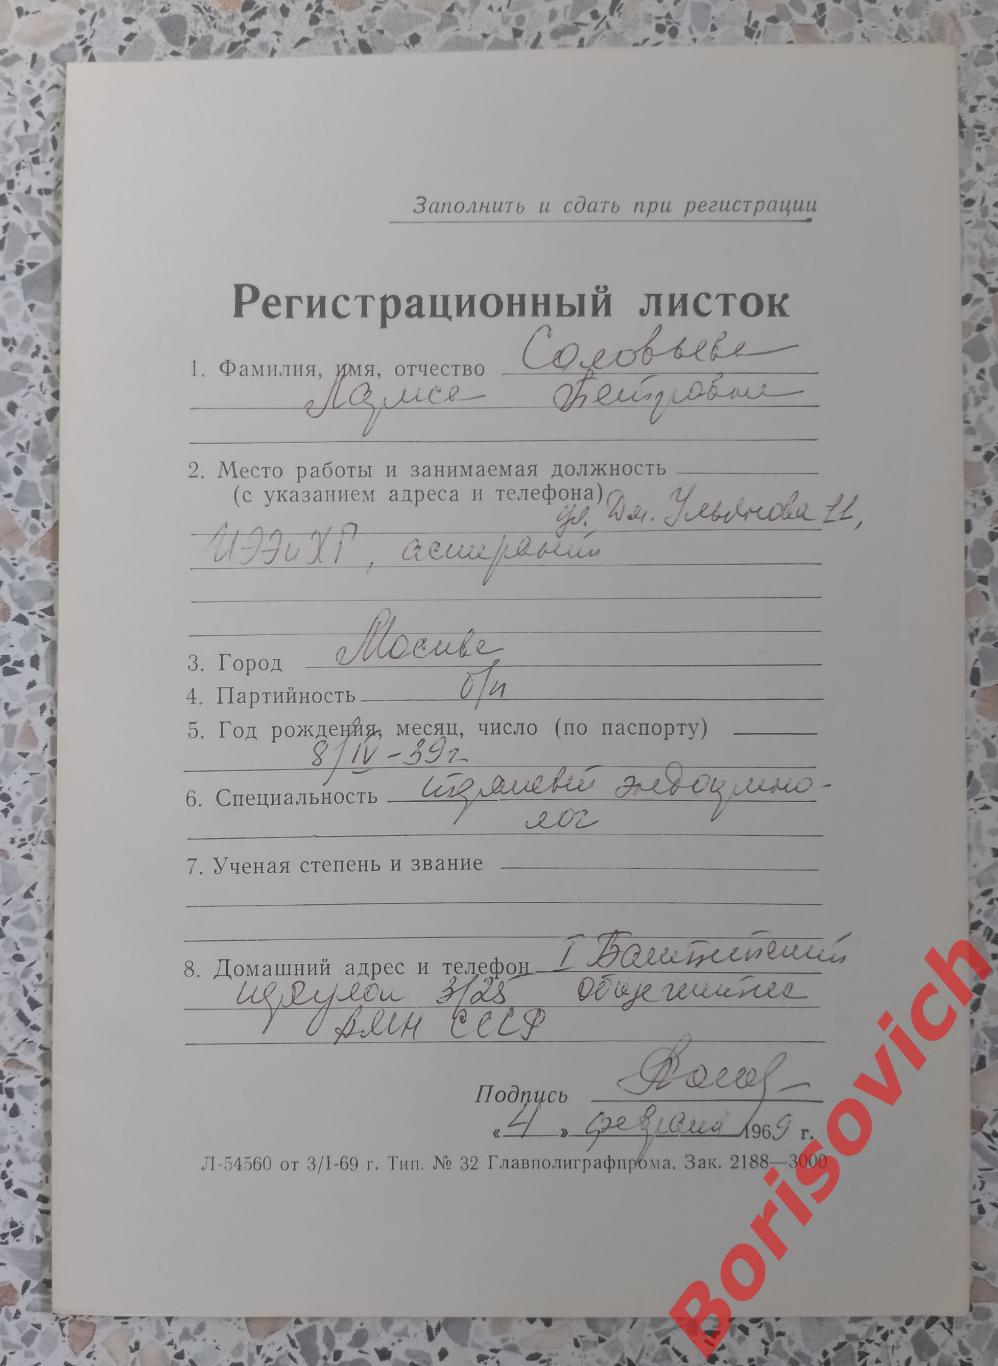 Программа XVIII сессии общего собрания академии медицинских наук СССР 1969 г 1